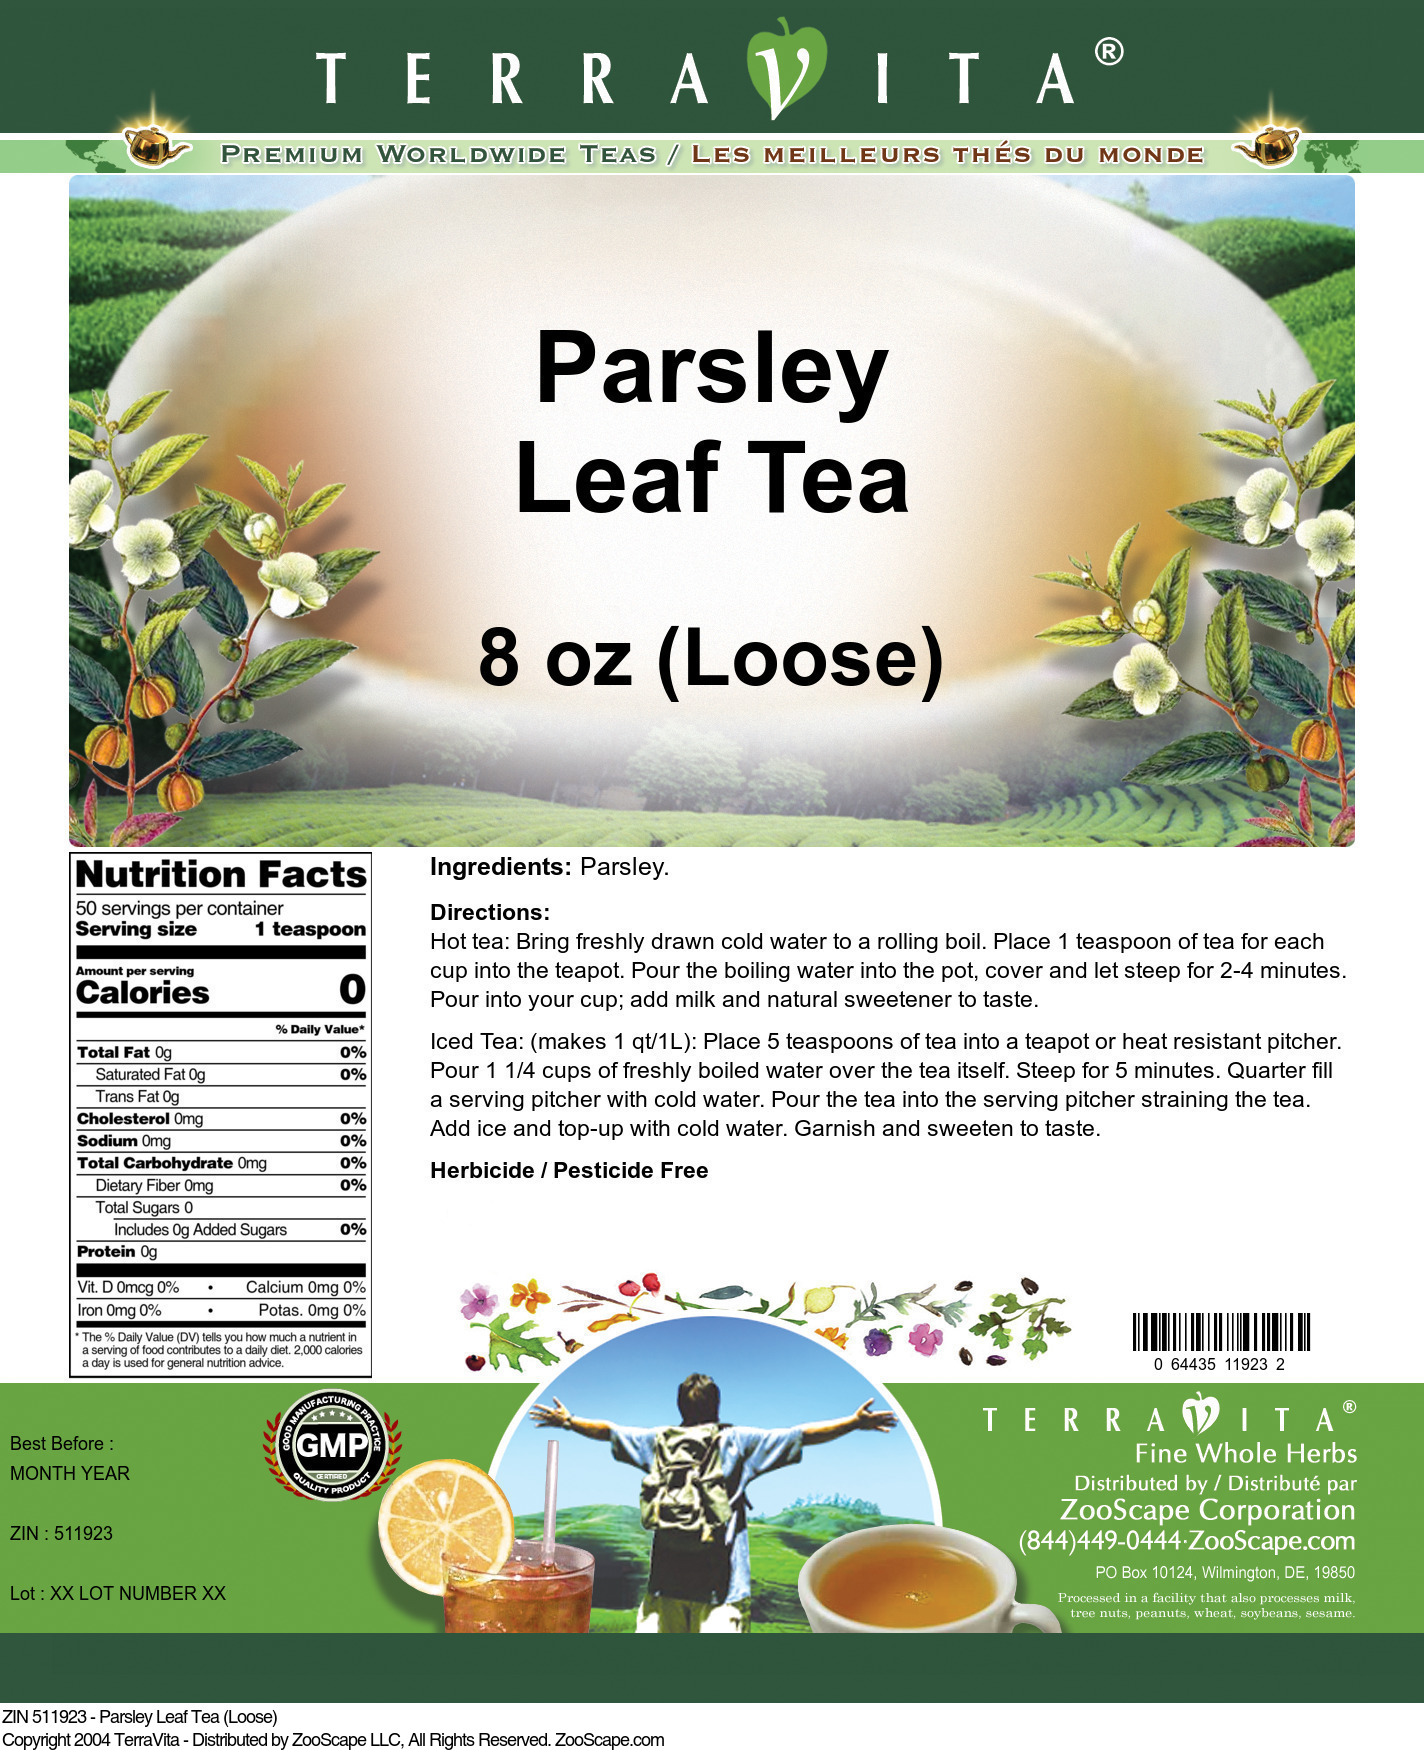 Parsley Leaf Tea (Loose) - Label